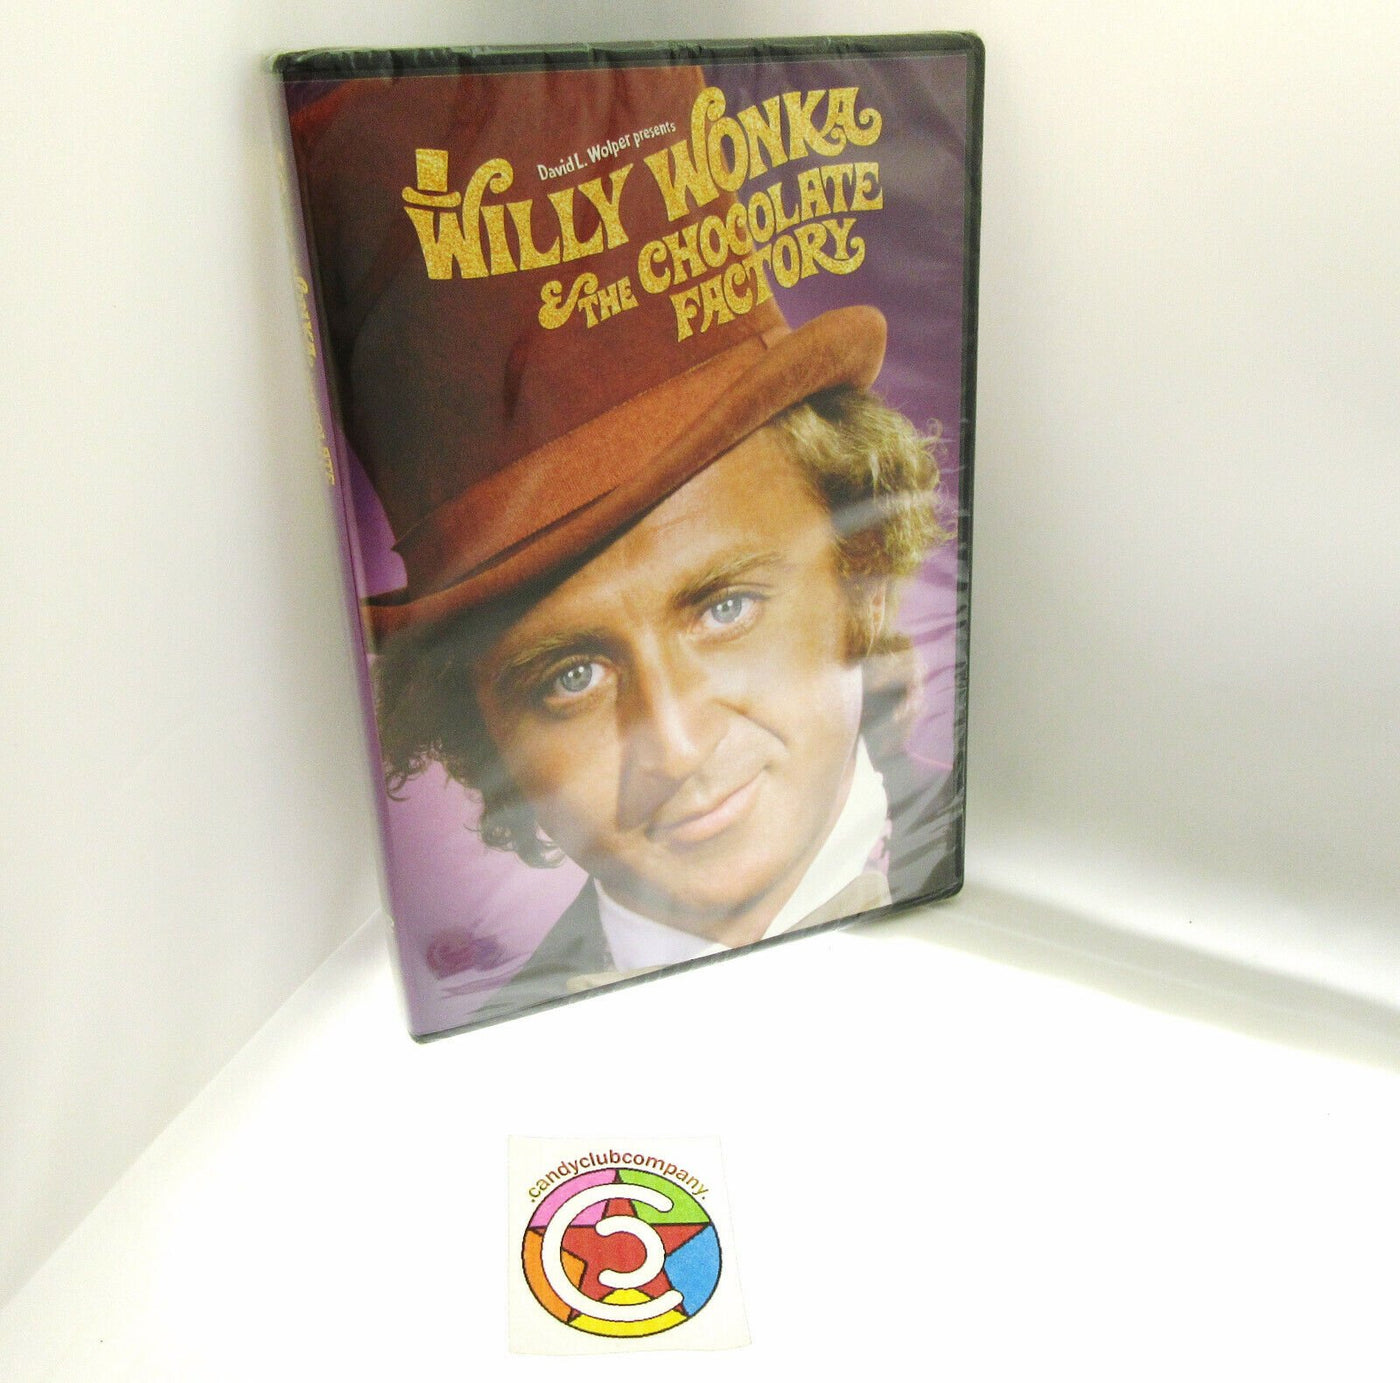 Willy Wonka & the Chocolate Factory ~ 1971 ~ Gene Wilder ~ New Movie DVD